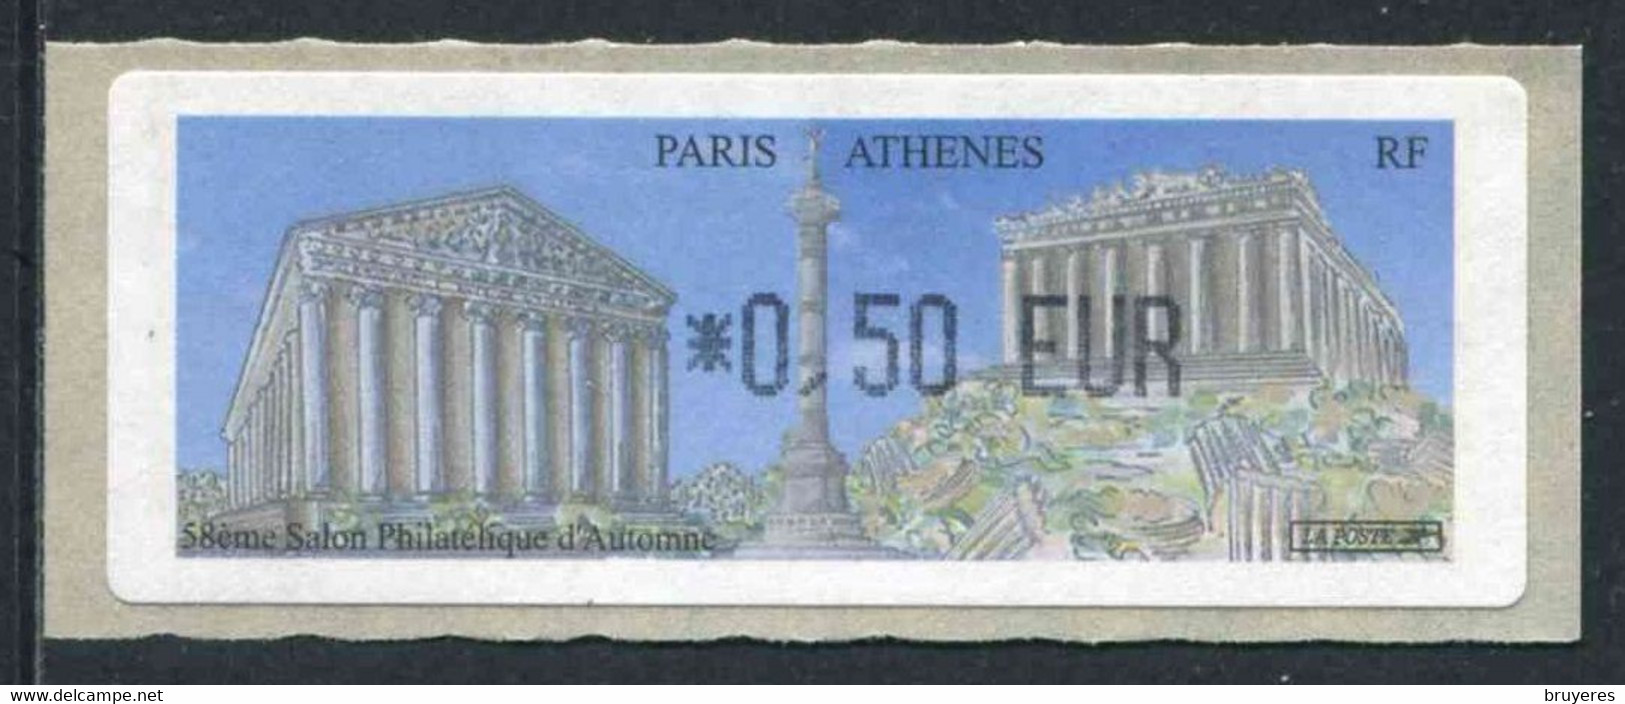 LISA 1 De 2004 " *0,50 EUR - 58e SALON PHILATELIQUE D'AUTOMNE - PARIS - ATHENES " - 1999-2009 Illustrated Franking Labels